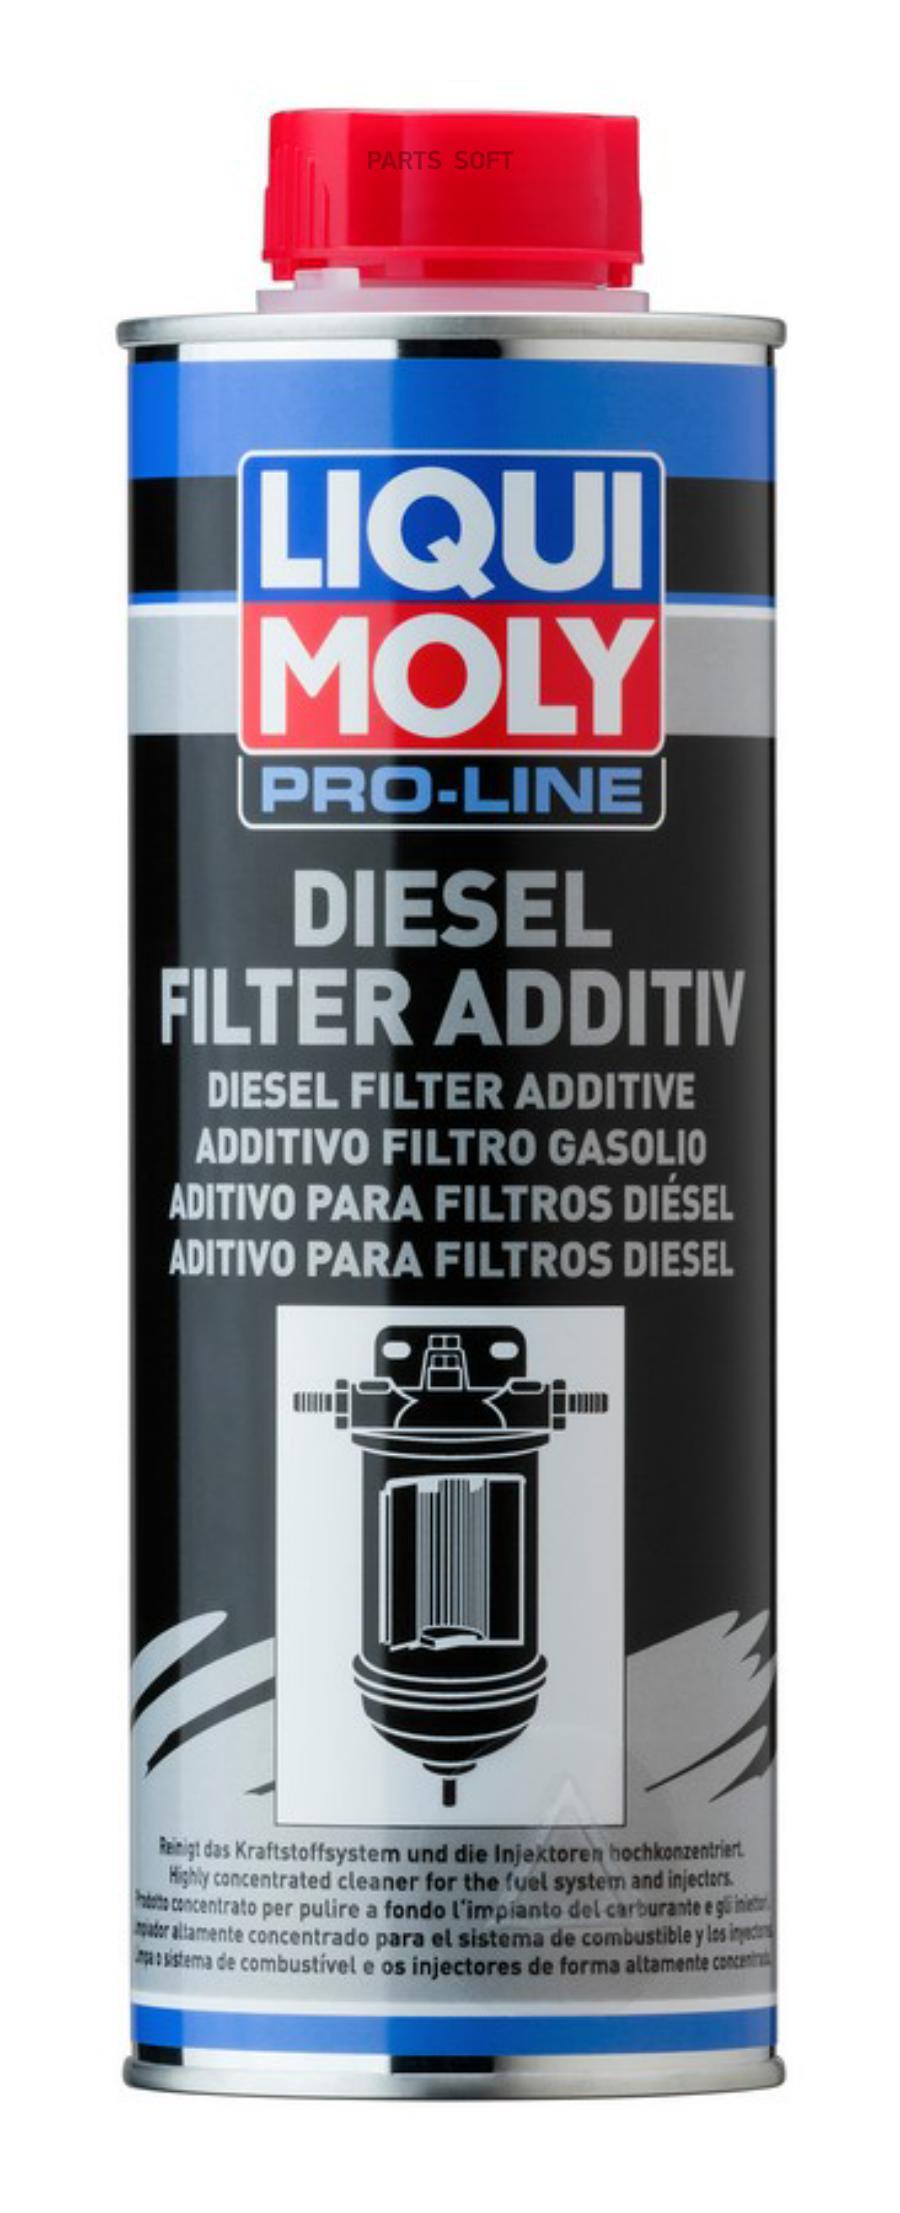 LIQUI MOLY 20790 Присадка д/диз.топливных фильтров Pro-Line Diesel Filter Additive 0,5л